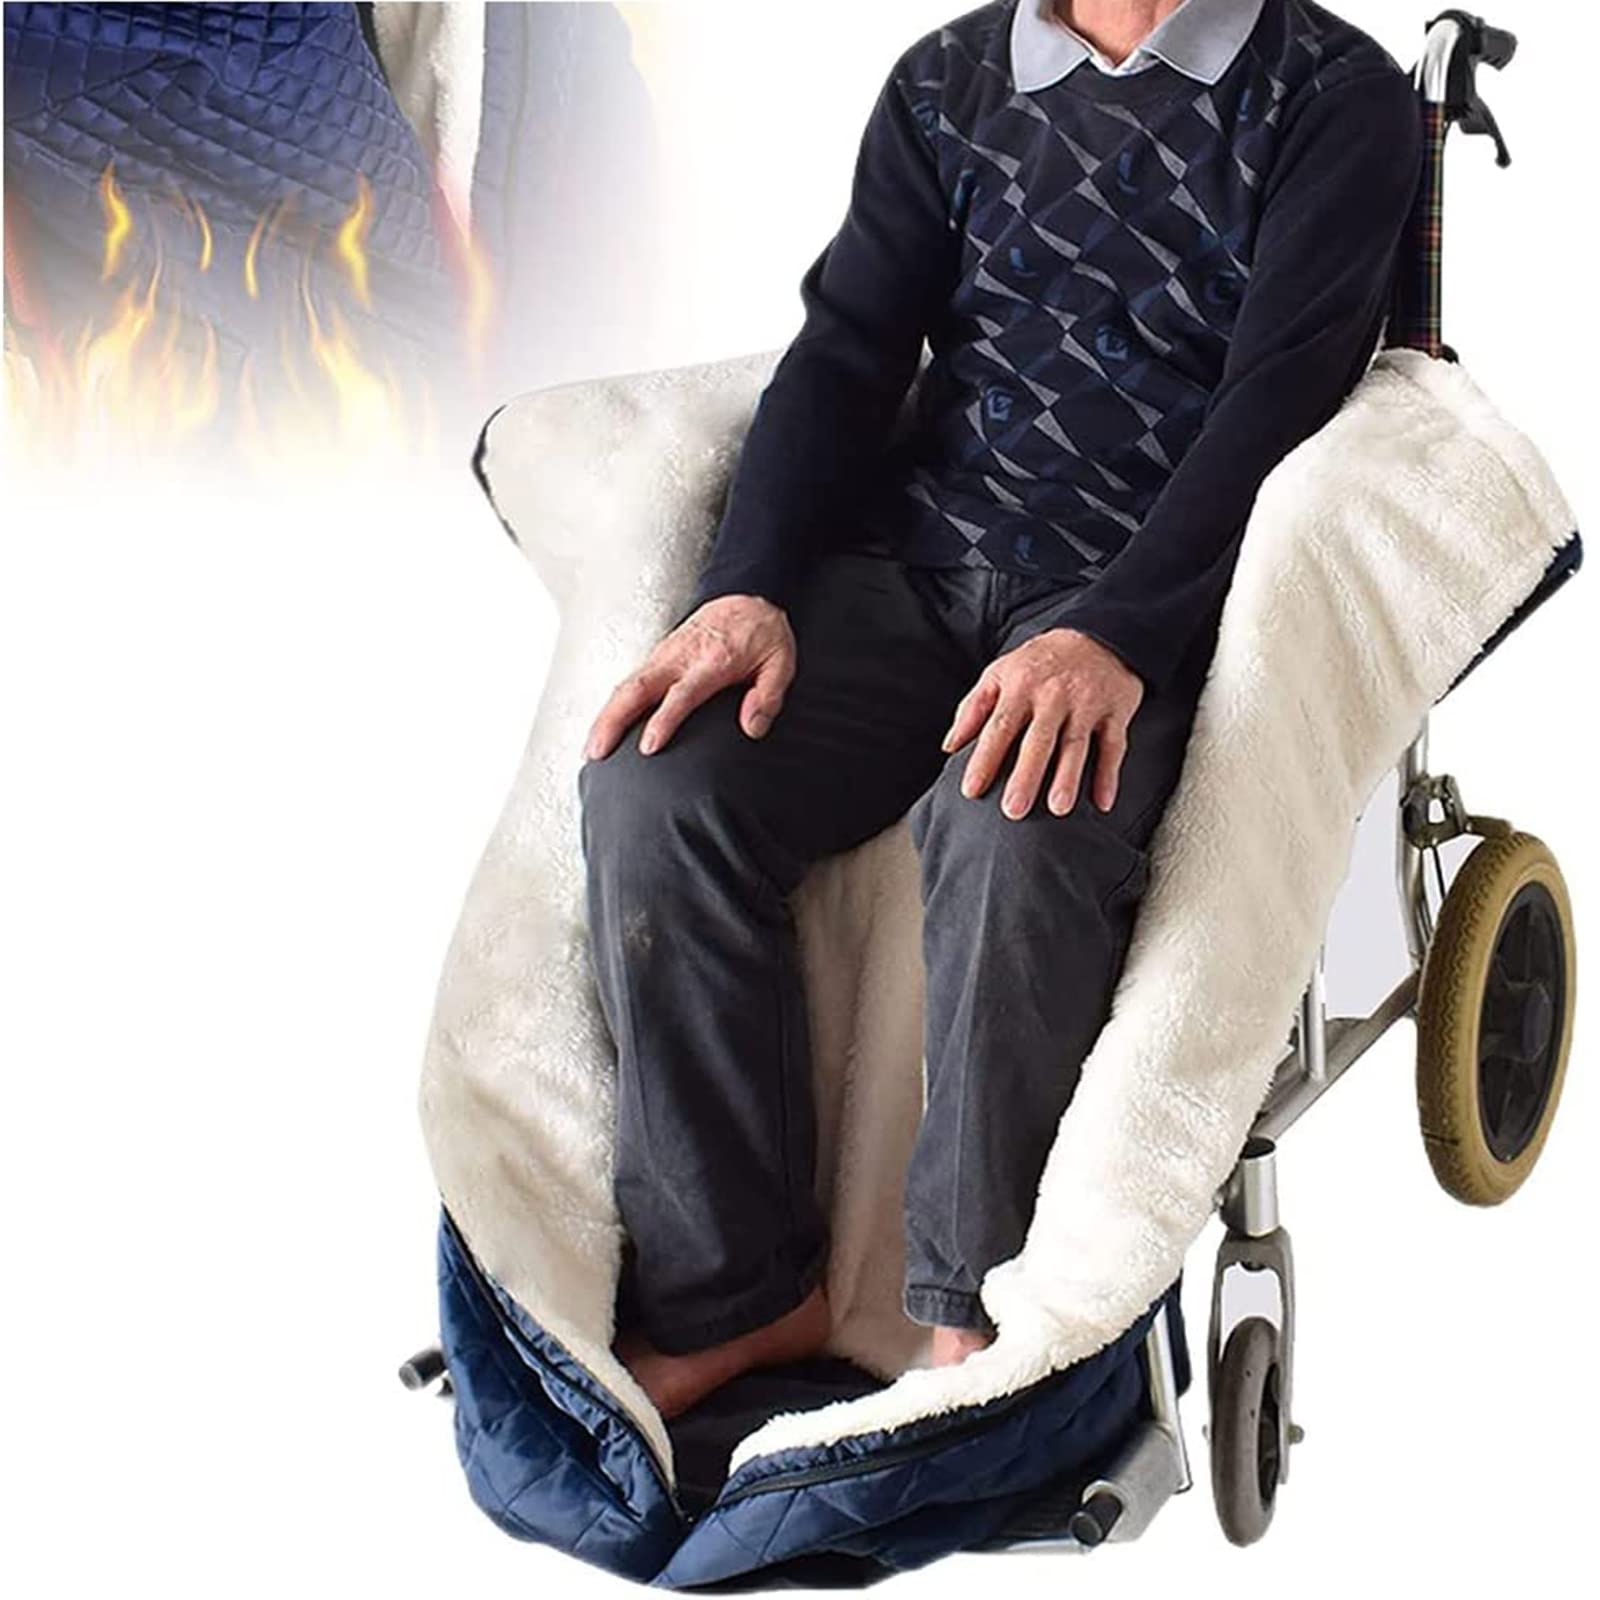 Rollstuhldecke Erwachsene Winter, Wasserdichte Mit Fleece Gefütterte Rollstuhldecke Beindecke Tragbare Winter Warm Rollstuhlsack Schlupfsack Rollstuhl-Zubehör Für Patienten, Älteste, Kaltes Wetter